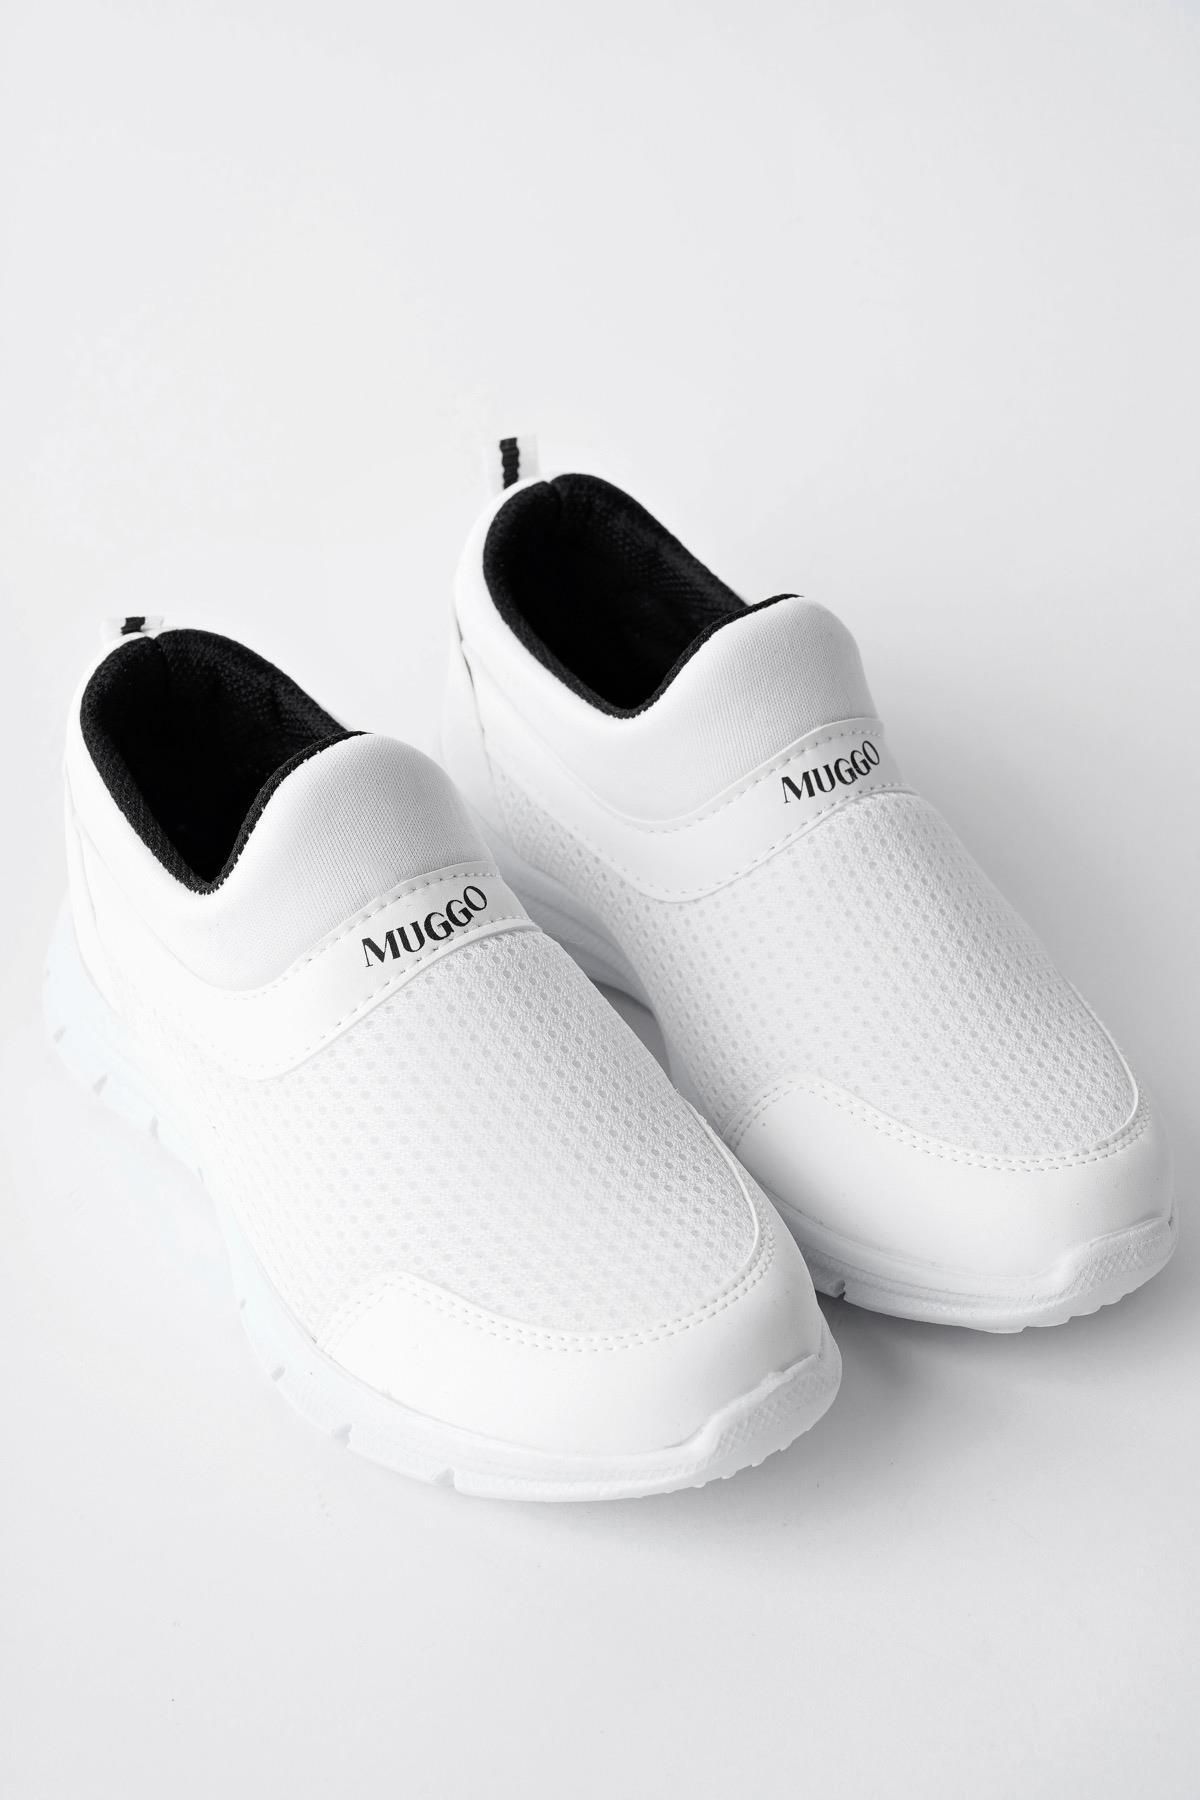 Muggo Pico Garantili Unisex Çocuk Bağcıksız Rahat Esnek Günlük Sneaker Spor Ayakkabı